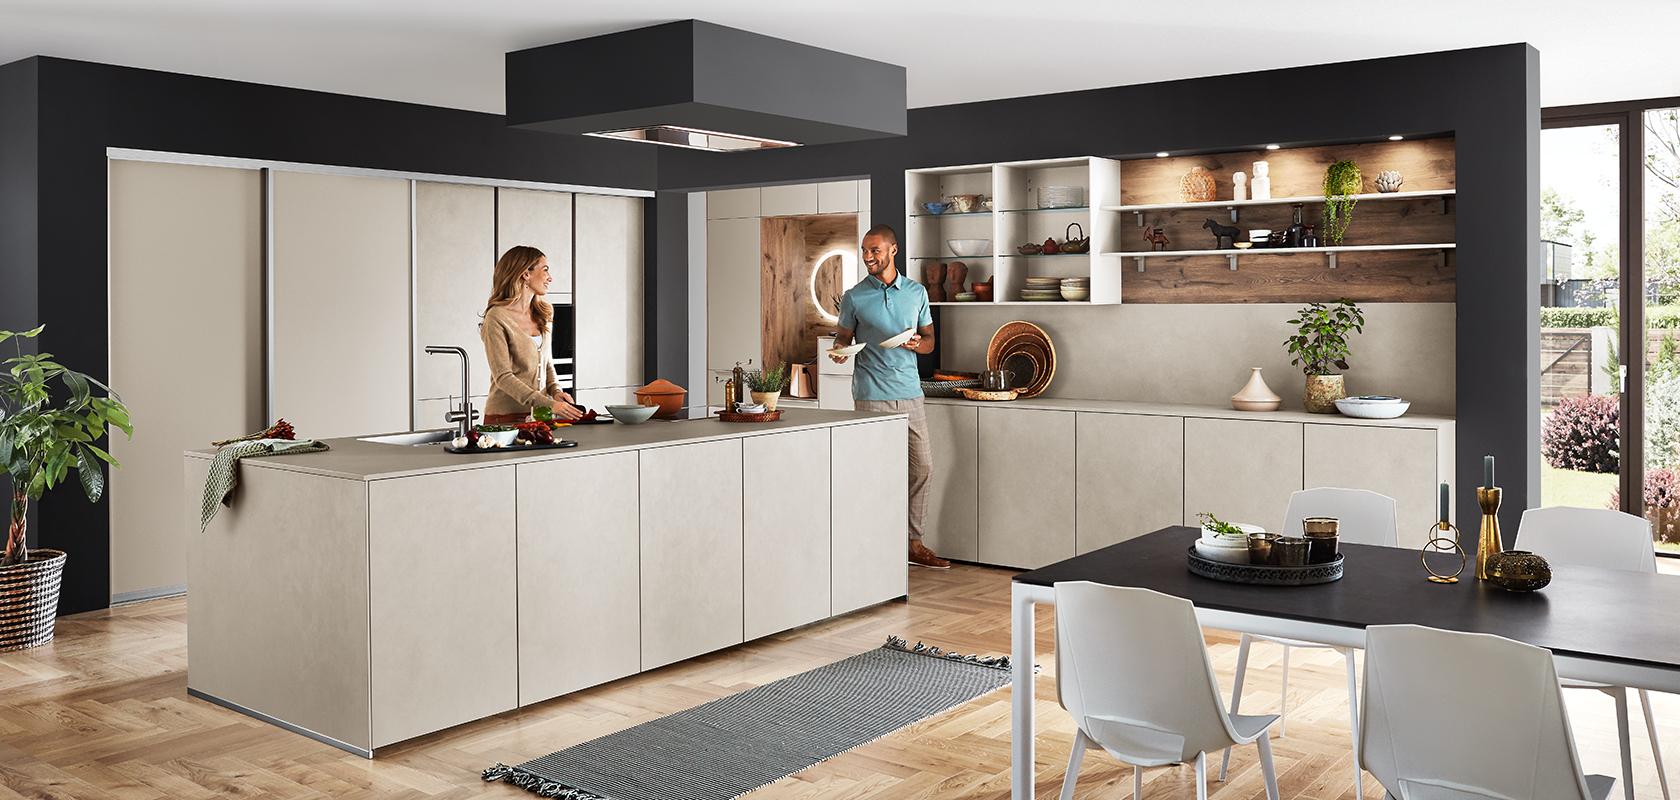 Elegantes modernes Küchendesign mit einer zentralen Insel, offenen Regalen und integrierten Geräten, während ein Paar ein Gespräch an der Arbeitsplatte genießt.